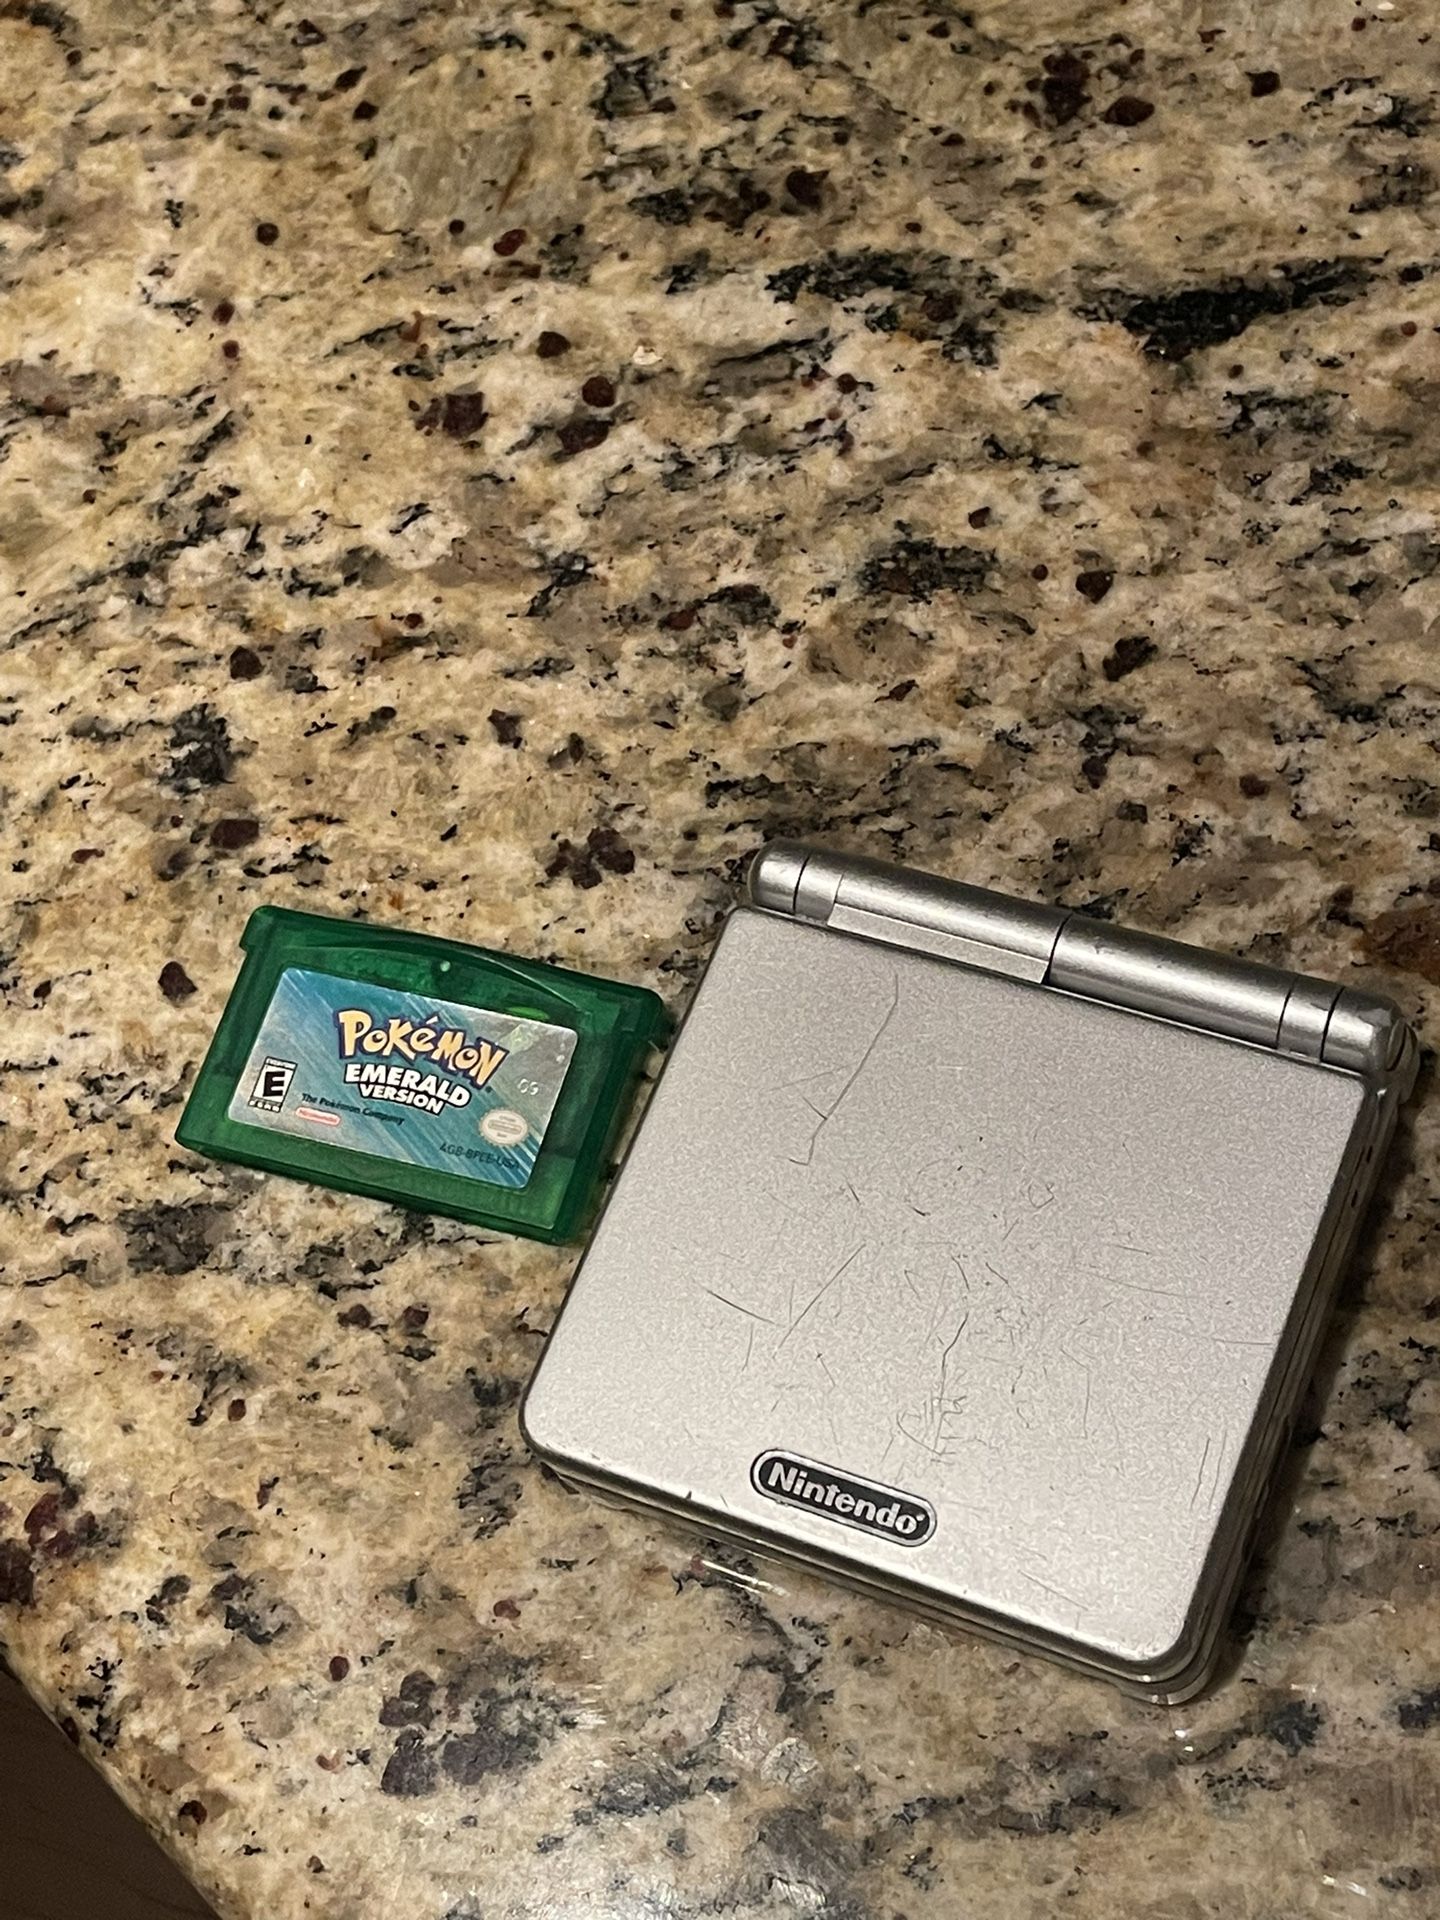 Pokémon Emerald With GBA sp